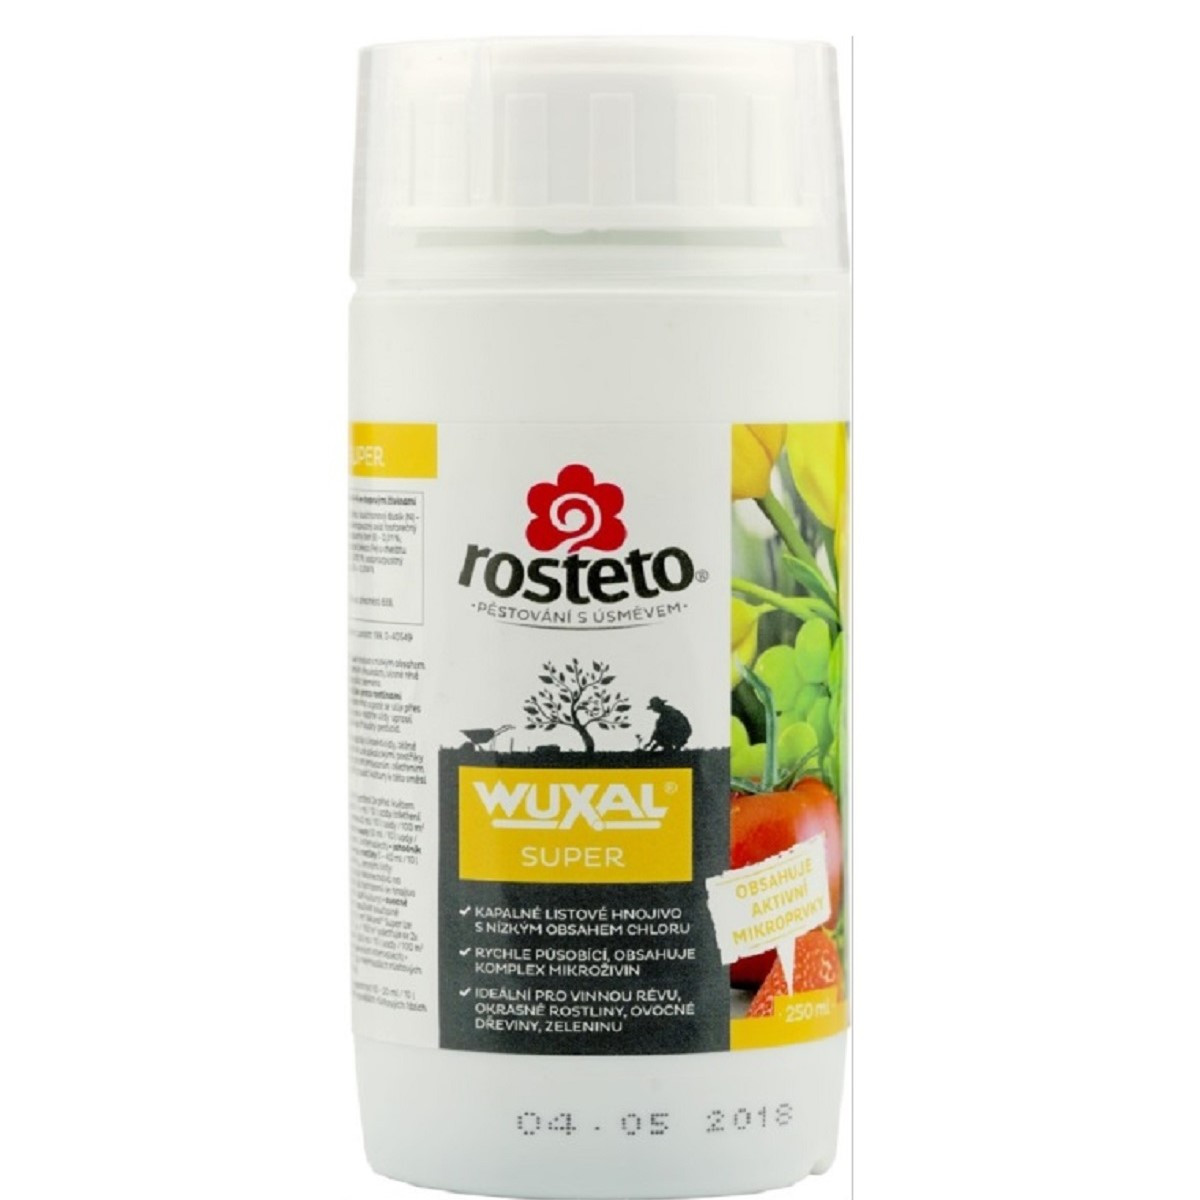 Wuxal super - tekuté hnojivo - Rosteto - 250 ml